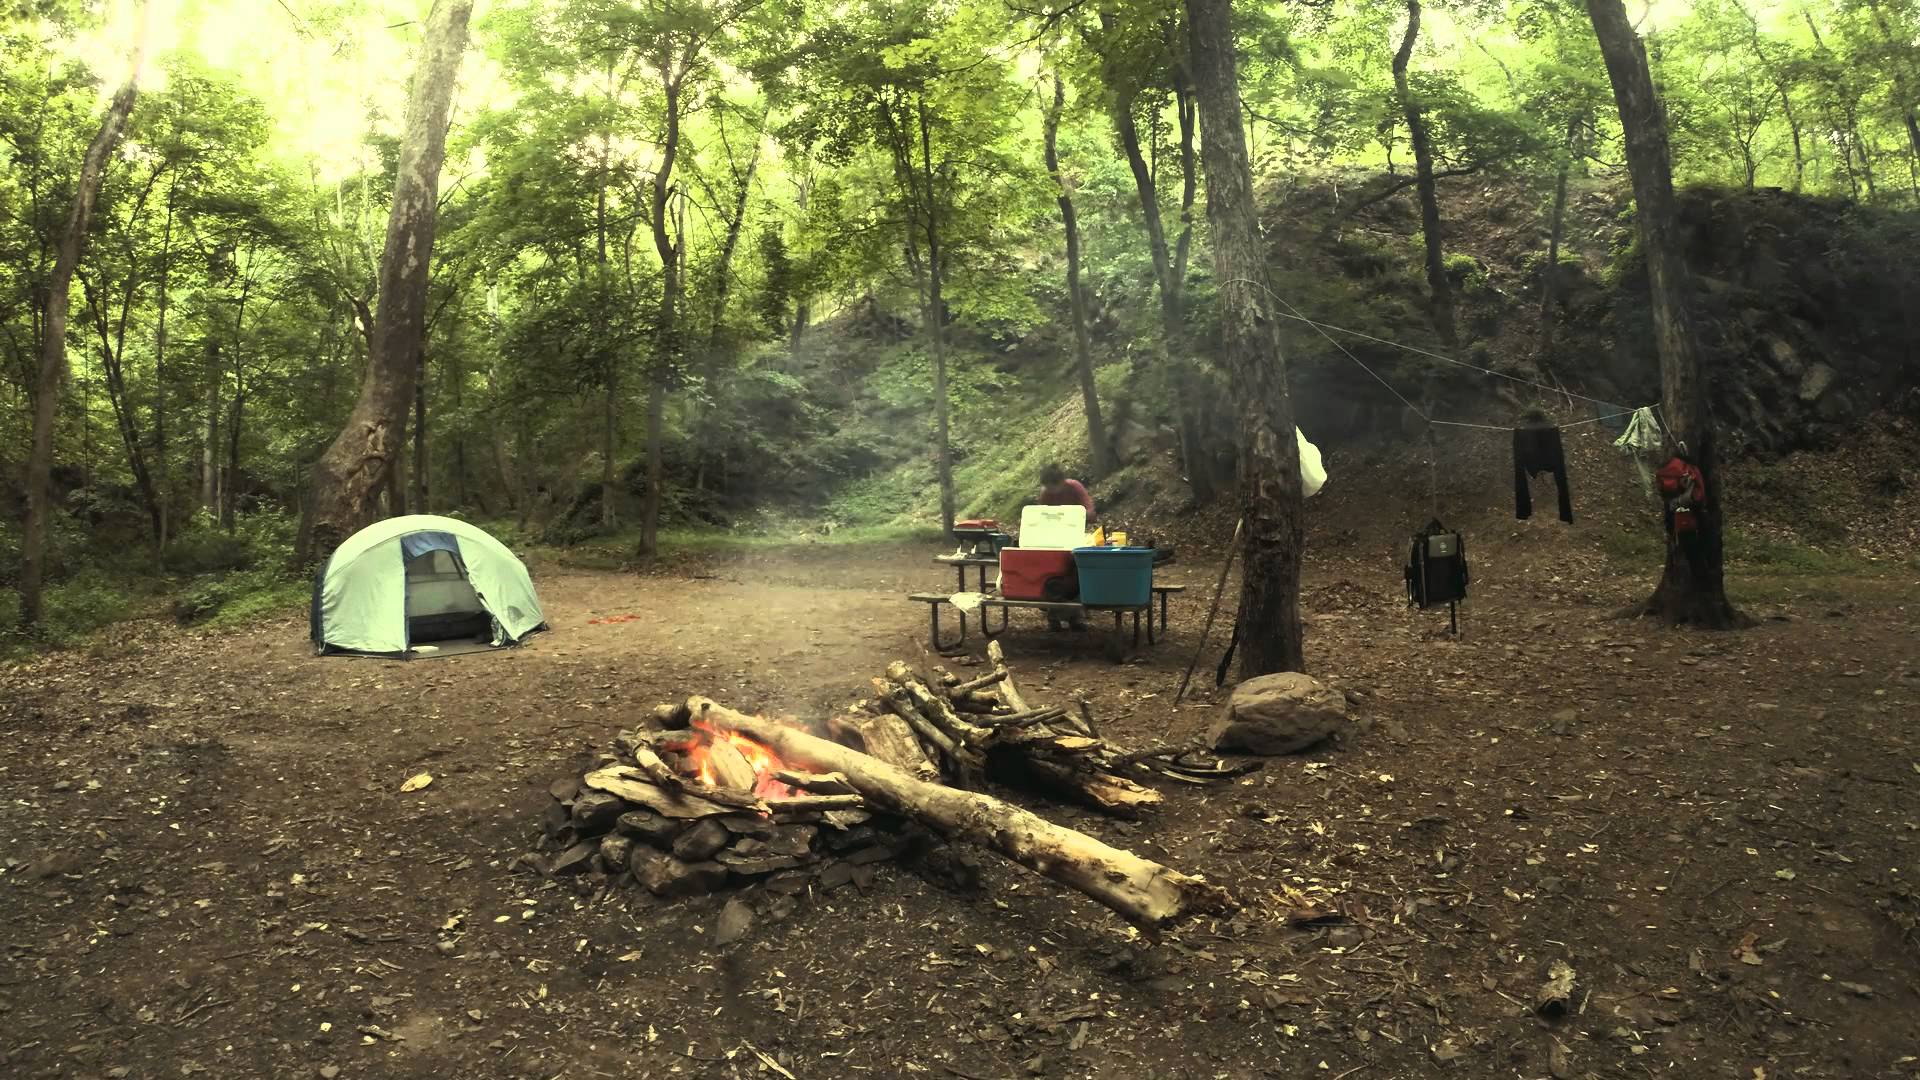 Ntrman camp. Кемпинг Форест. Кемпинг в лесу. Кемпинг фон. Палаточный лагерь мистический.